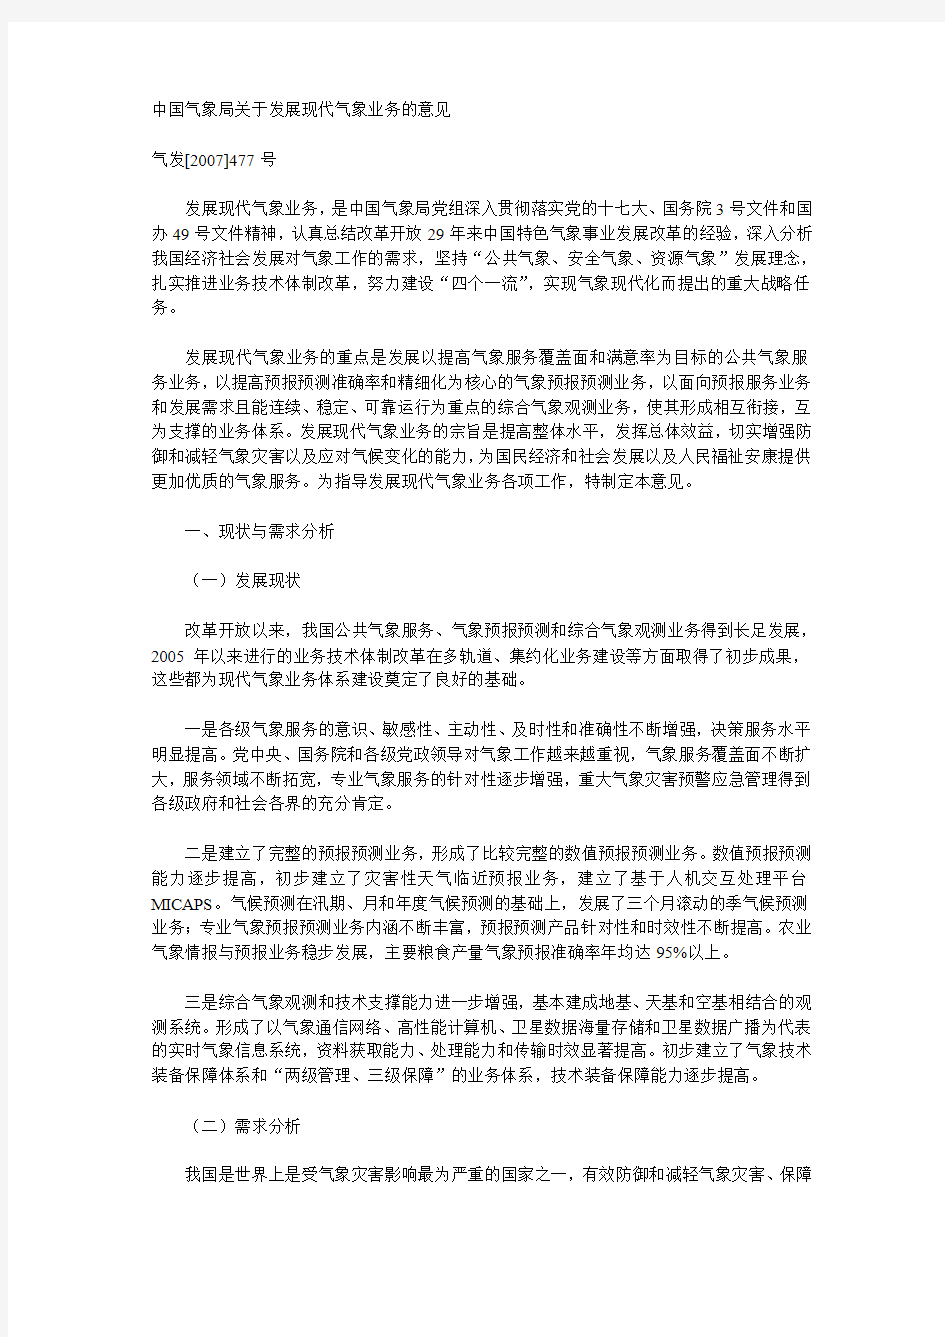 1、中国气象局关于发展现代气象业务的意见